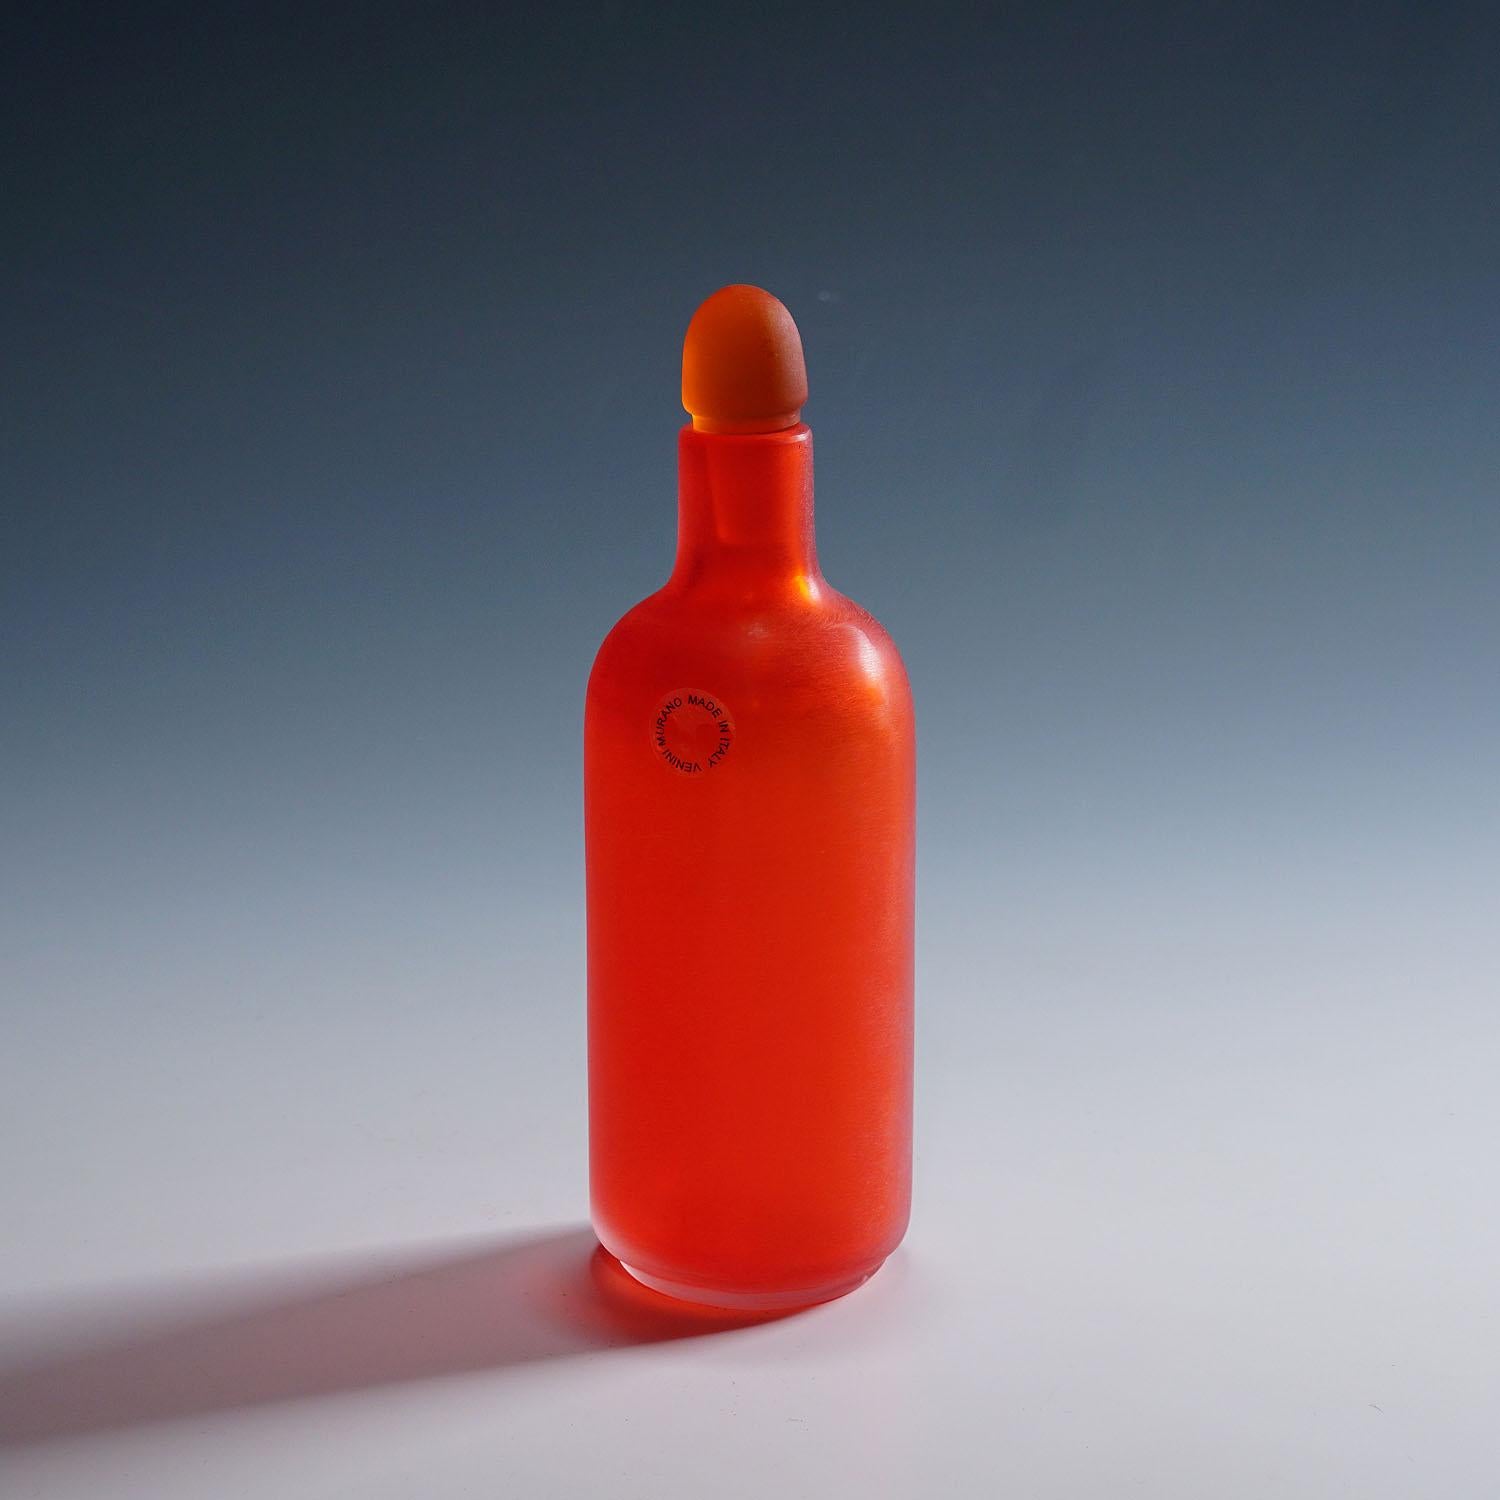 Paolo Venini Inciso-Glasflasche, hergestellt von Venini, 1990er Jahre

Vintage-Glasflasche 